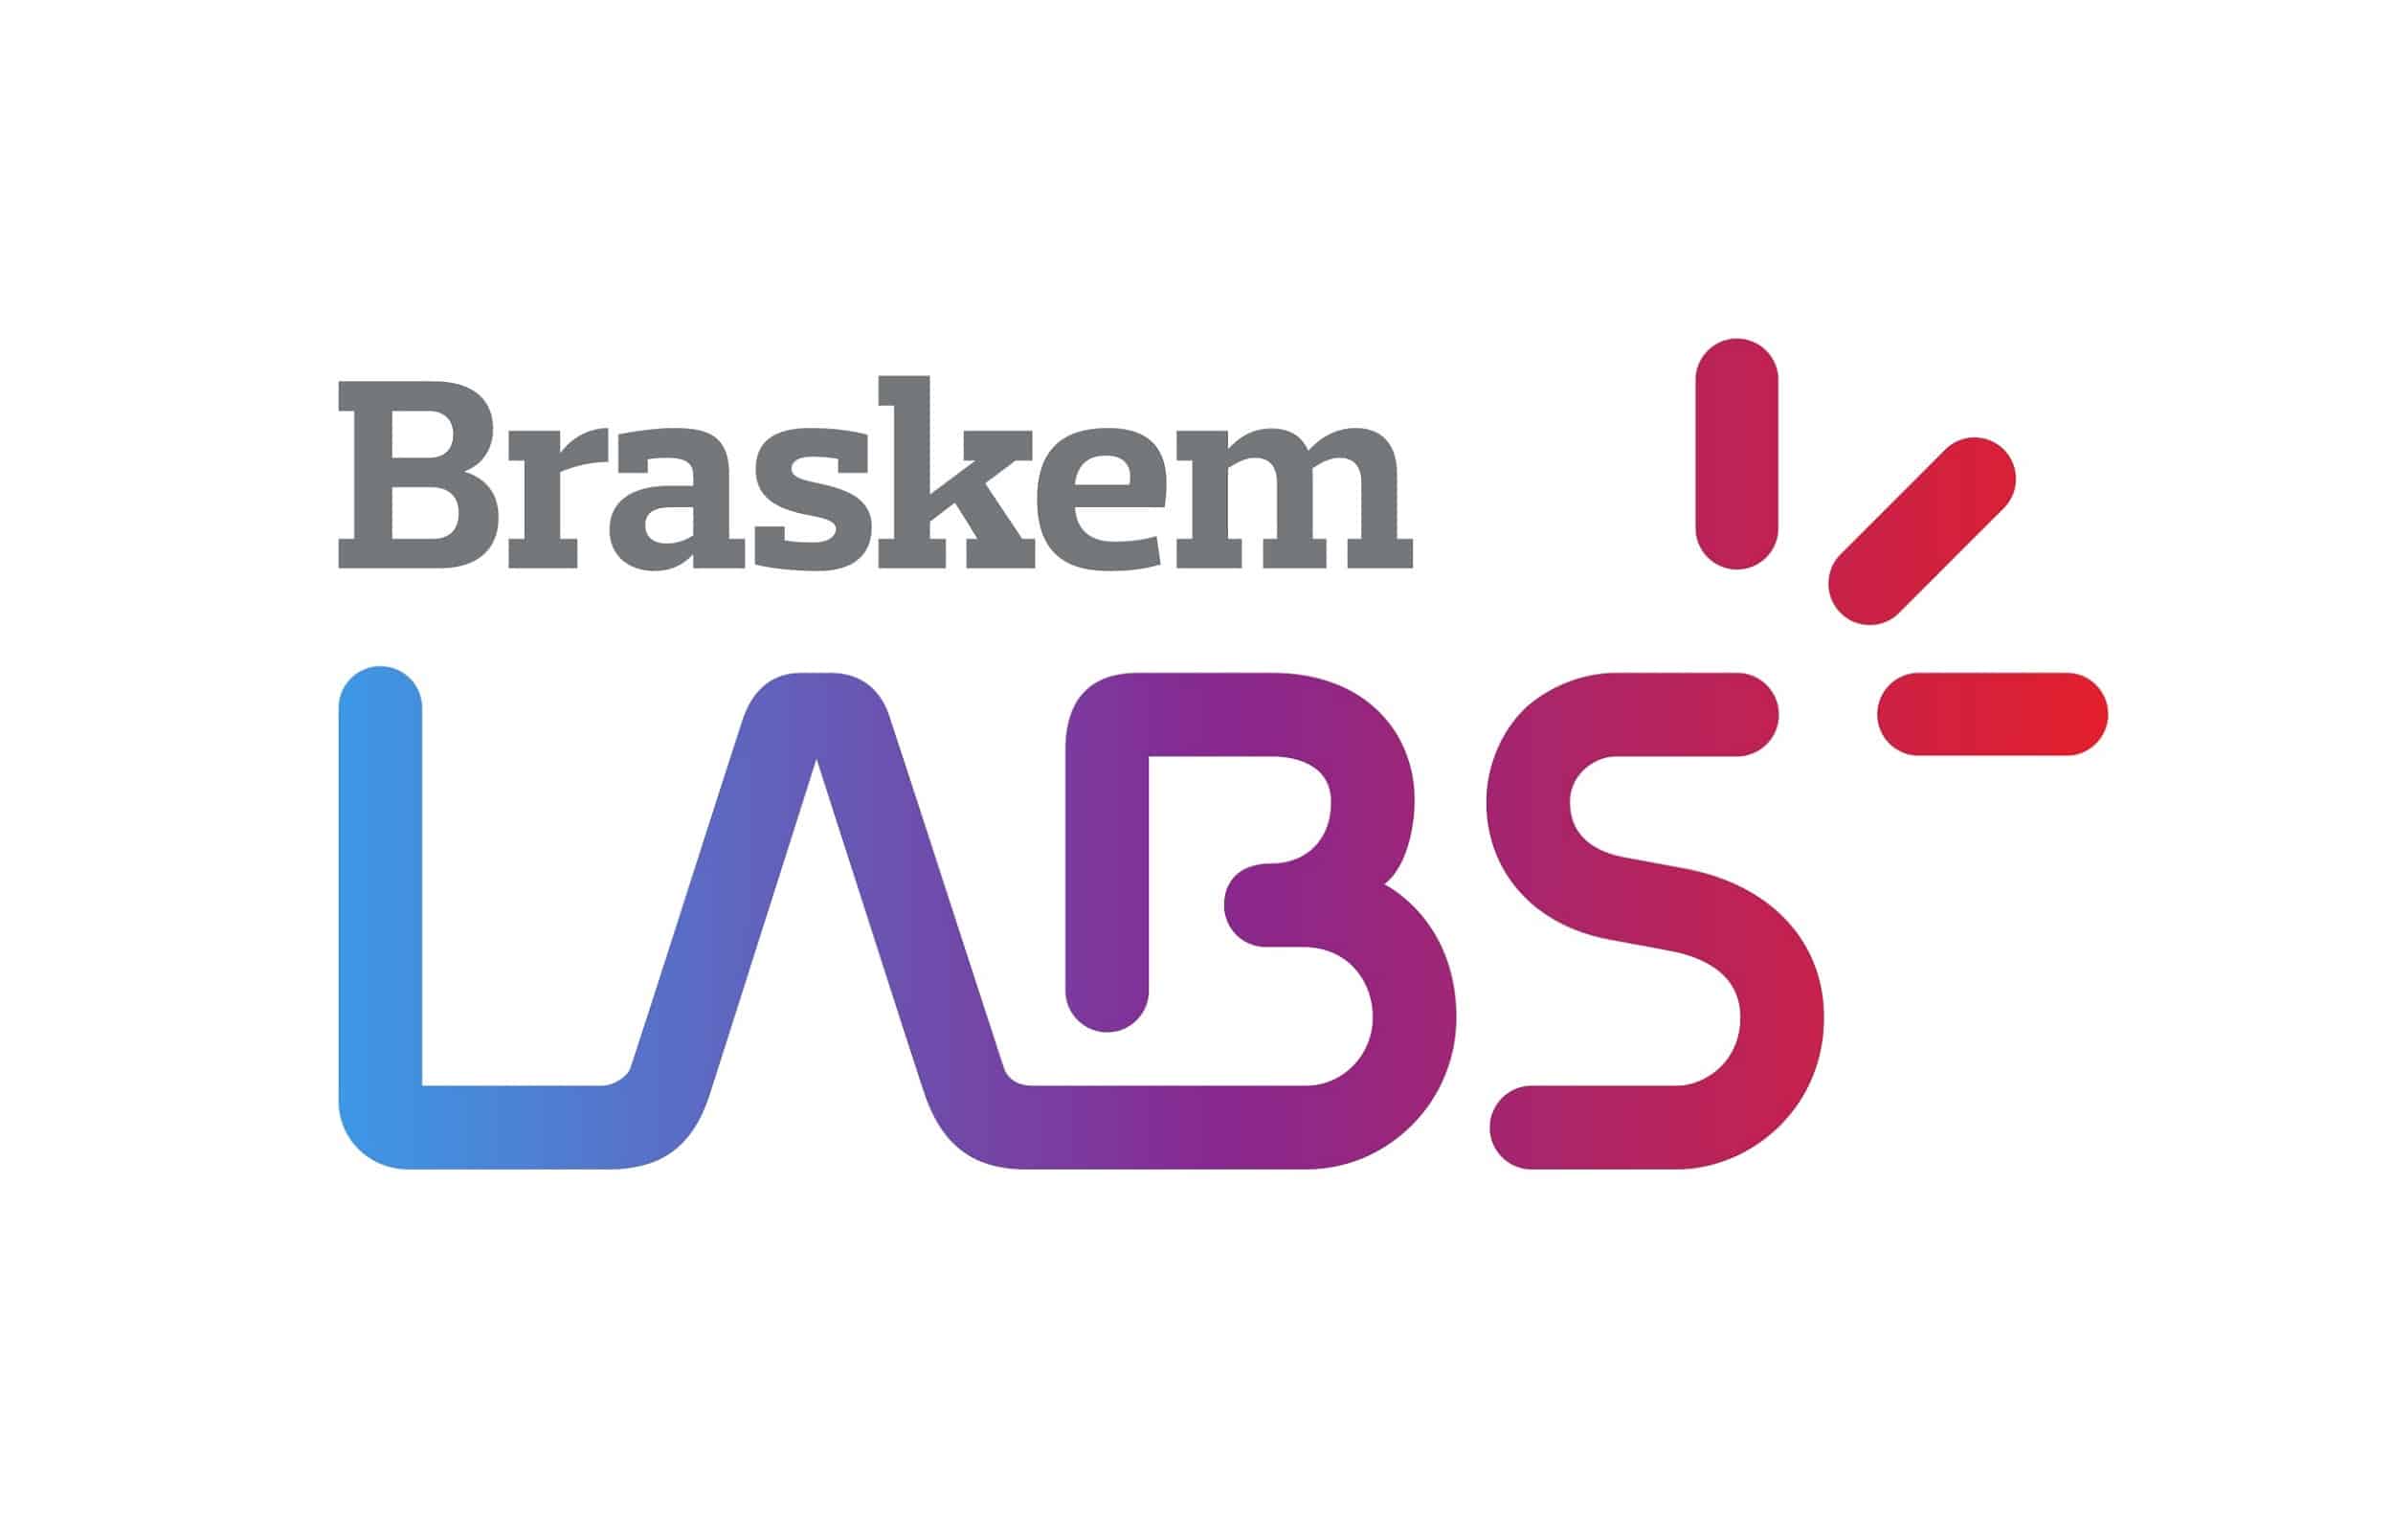 Braskem Labs Scale seleciona 10 startups para programa de aceleração